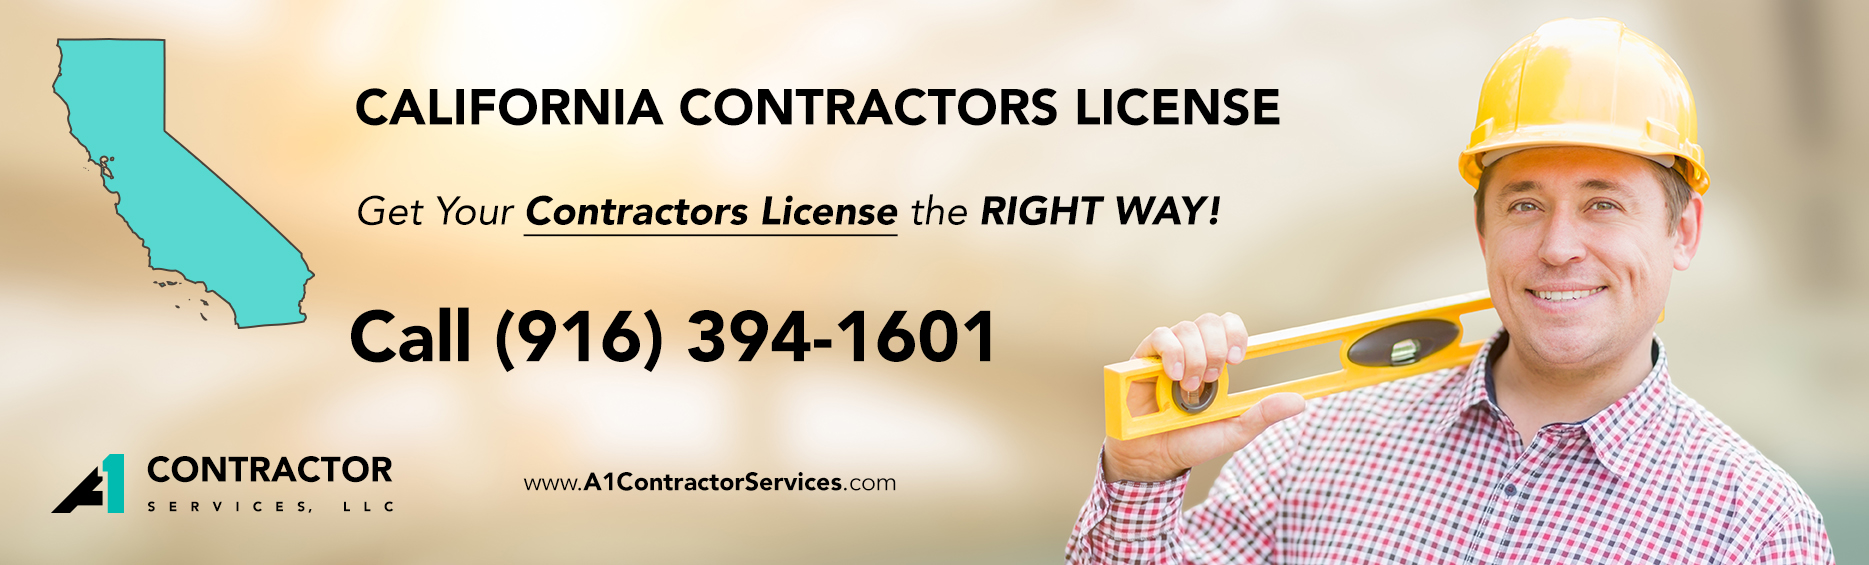 California State Contractors License